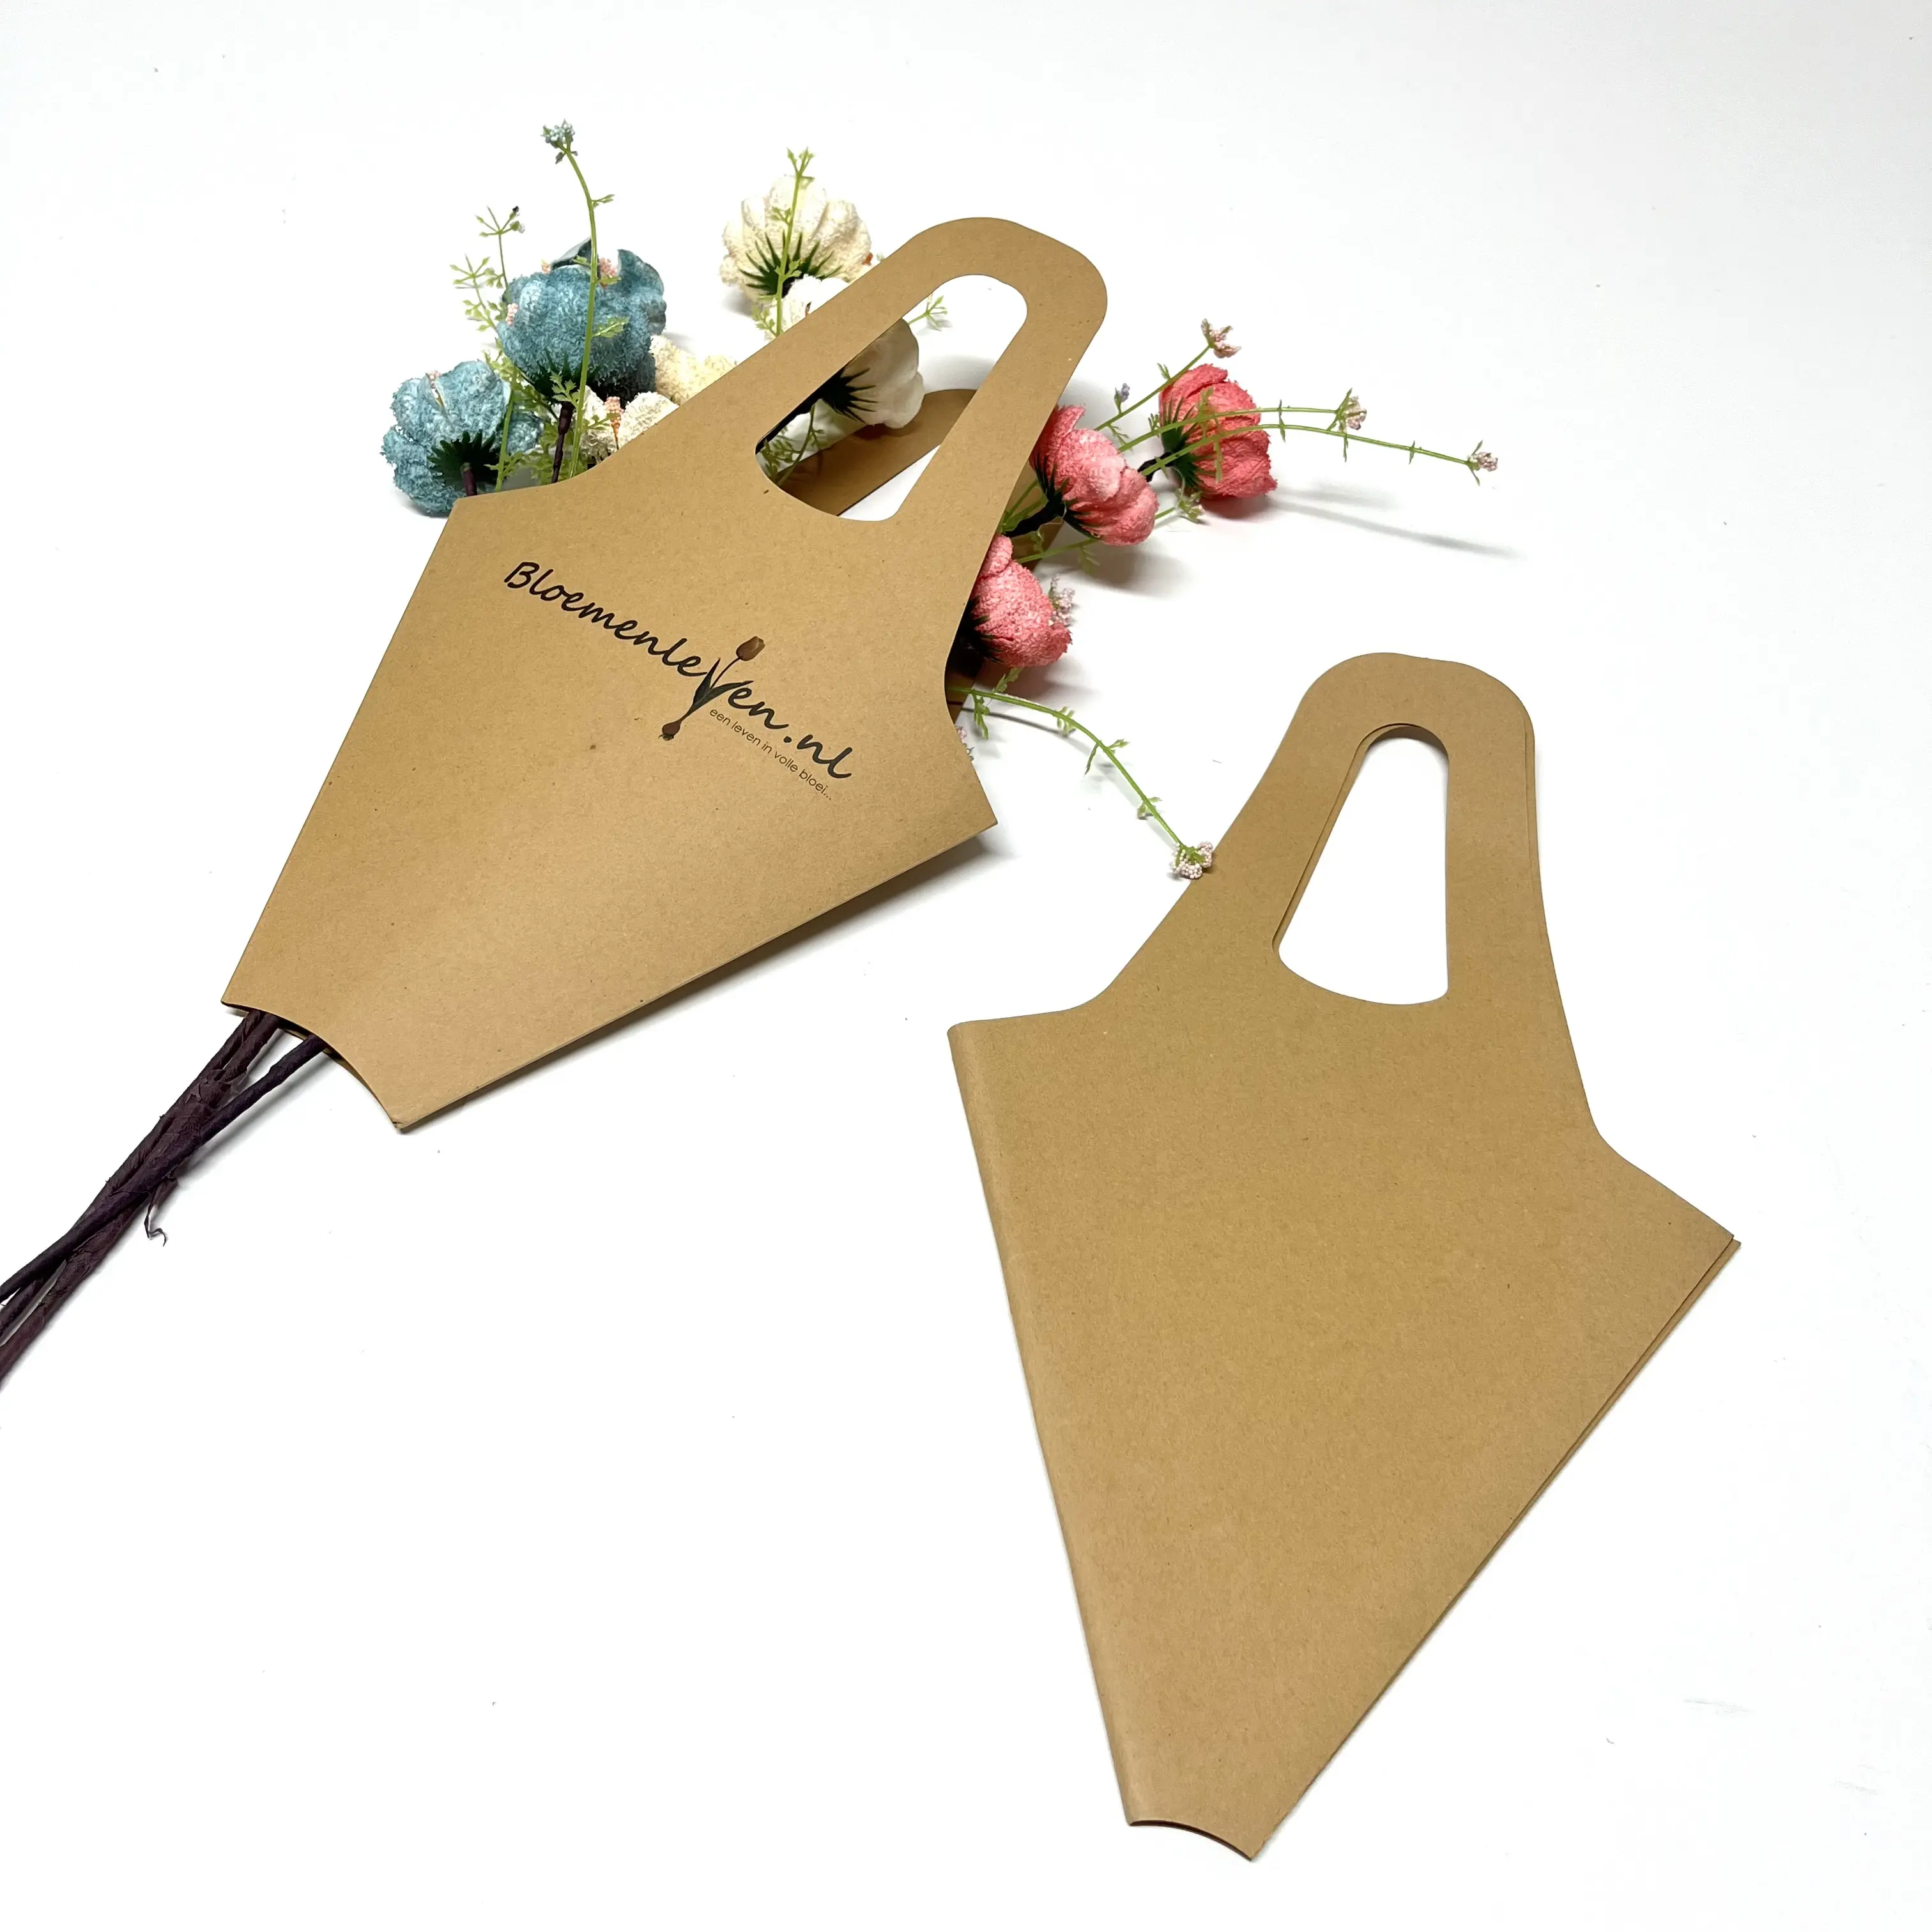 カスタムクラフト紙フラワースリーブボックス植物包装装飾ギフトバッグバレンタインデー用ハンガー付き